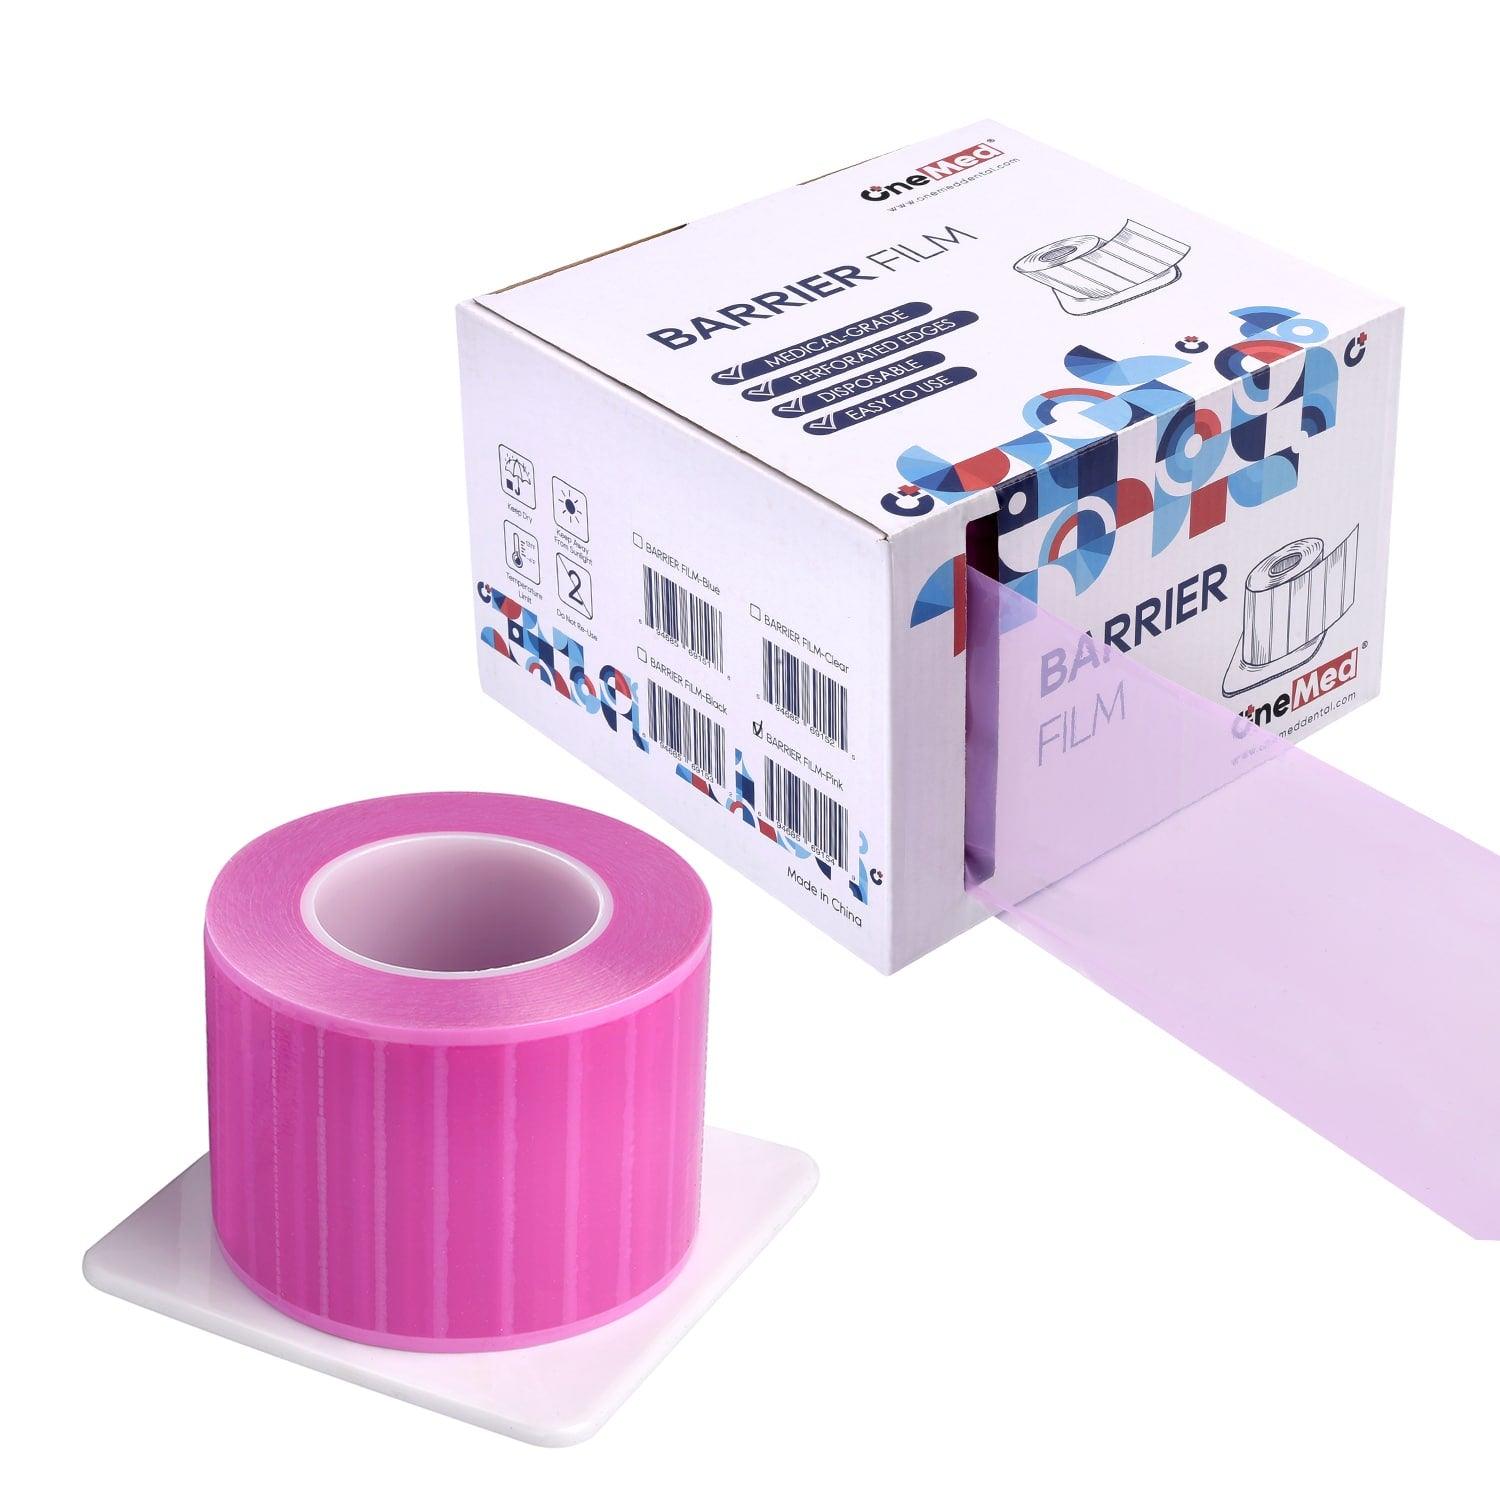 OneMed Dental Pink Barrier Film Roll 4" x 6" 1200 Sheets / Roll - OneMed Dental